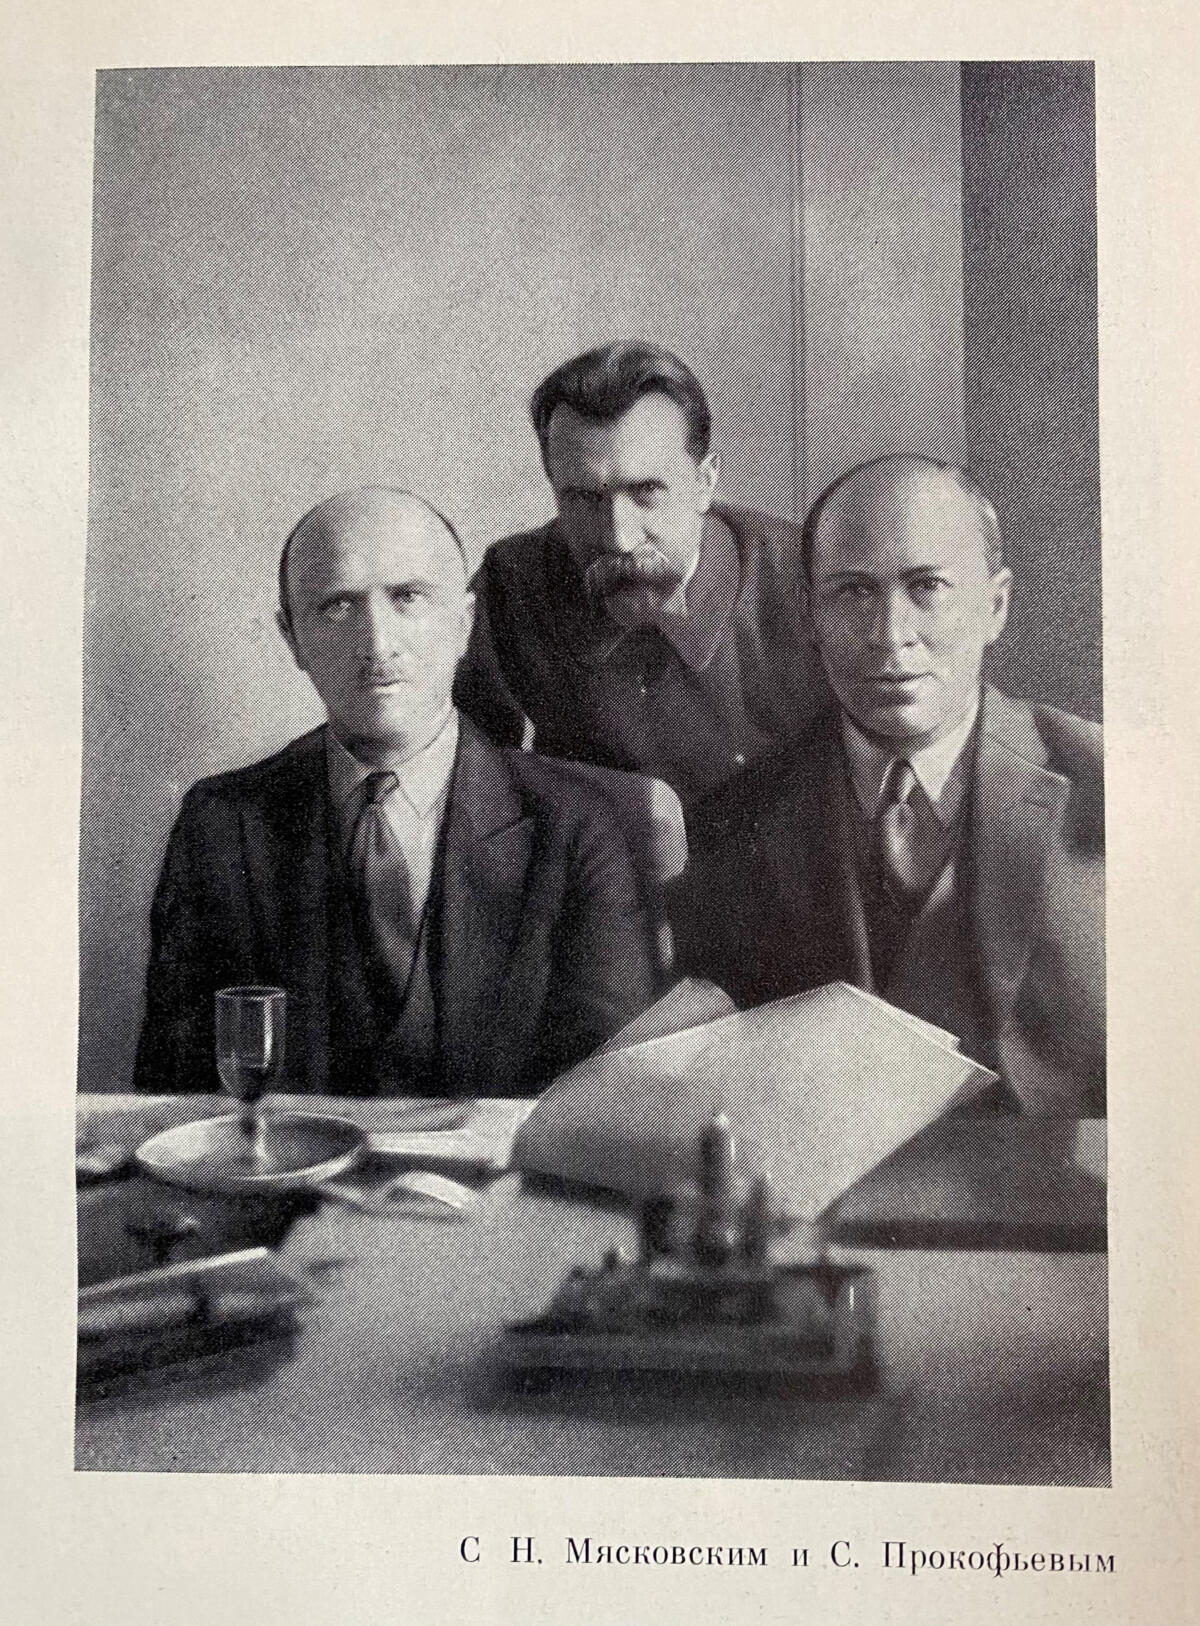 Kuvassa vasemmalta oikealle: Boris Asafjev, Nikolai Mjaskovski ja Sergei Prokofjev. Kolme säveltäjää opiskelivat Pietarin konservatoriolla yhtä aikaa.